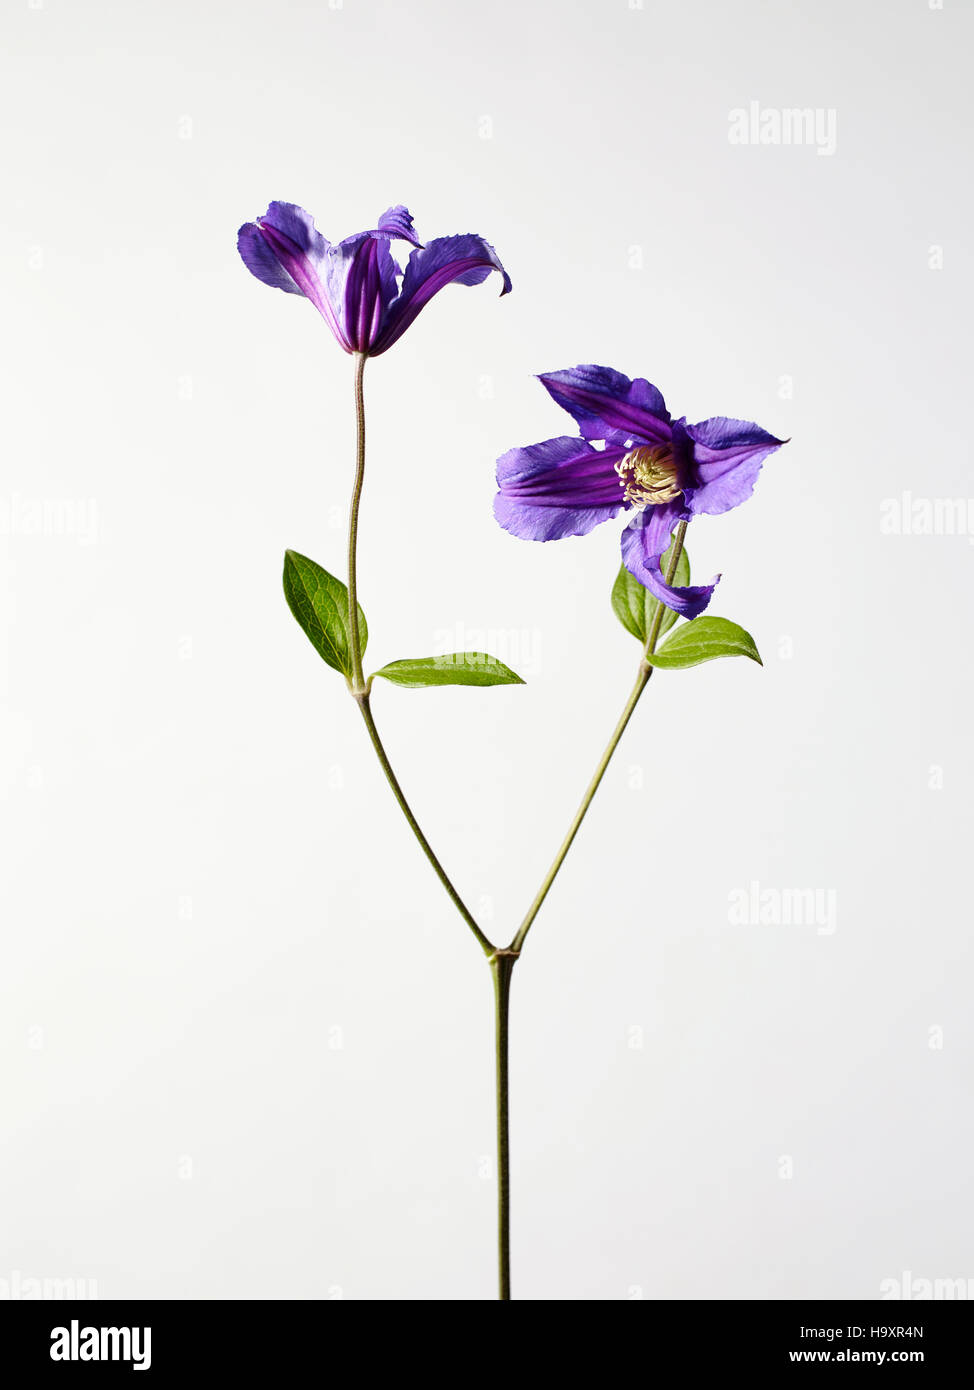 Studio still life fotografia di viola la clematide fiori due teste di fiori, luminosi petali colorati in fiore Foto Stock